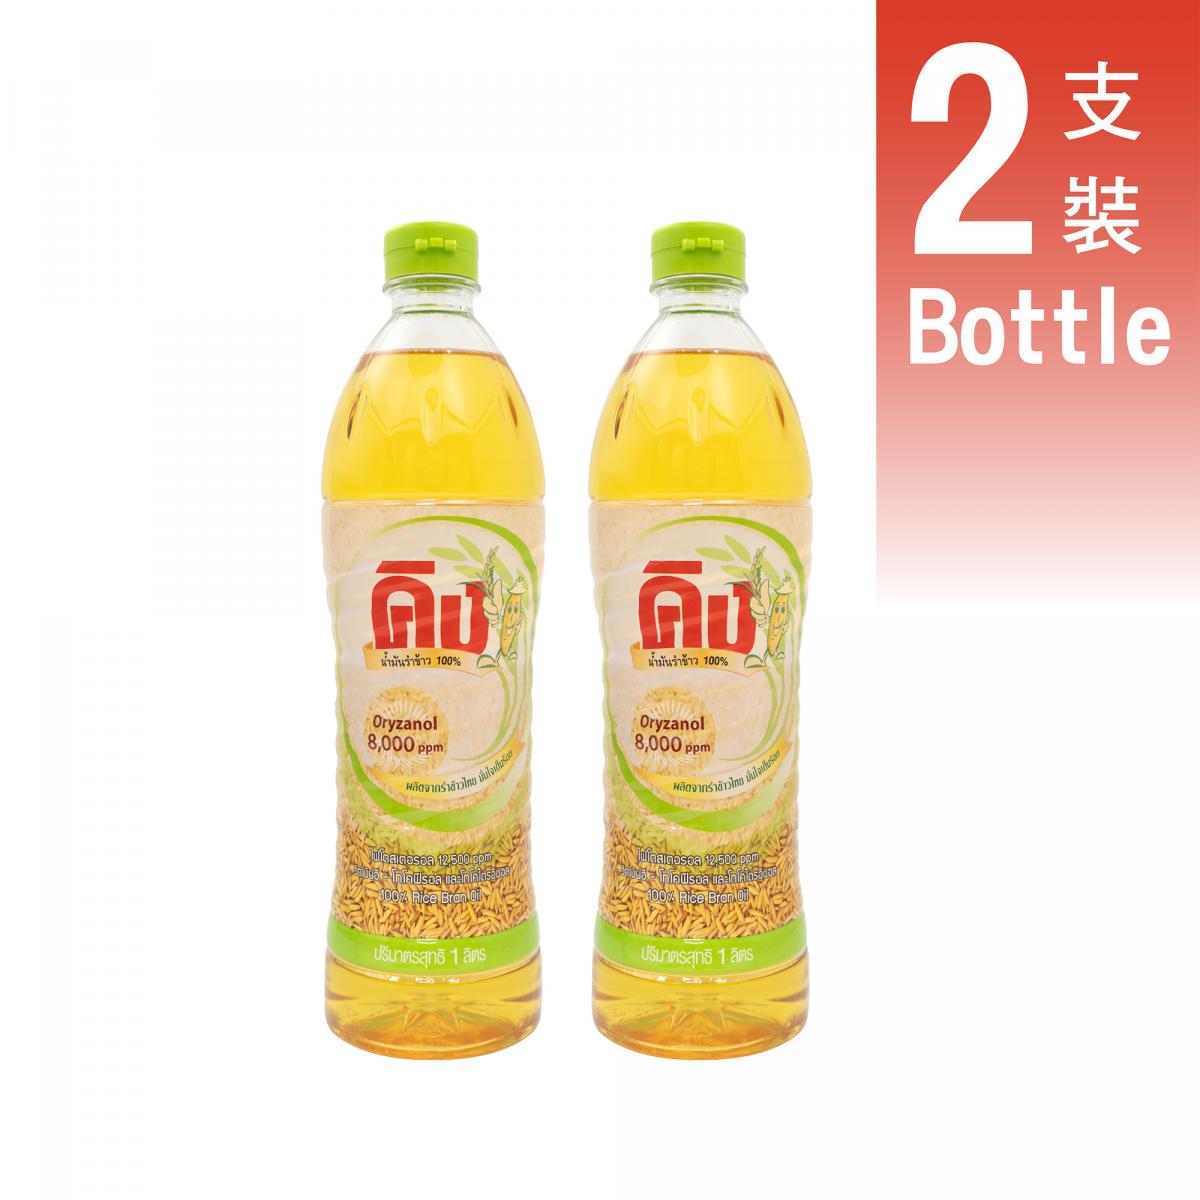 Thai Rizi Rice Oil / Rice Bran Oil 1L x 2 Bottles - 8000ppm Oryzanol [平行進口]